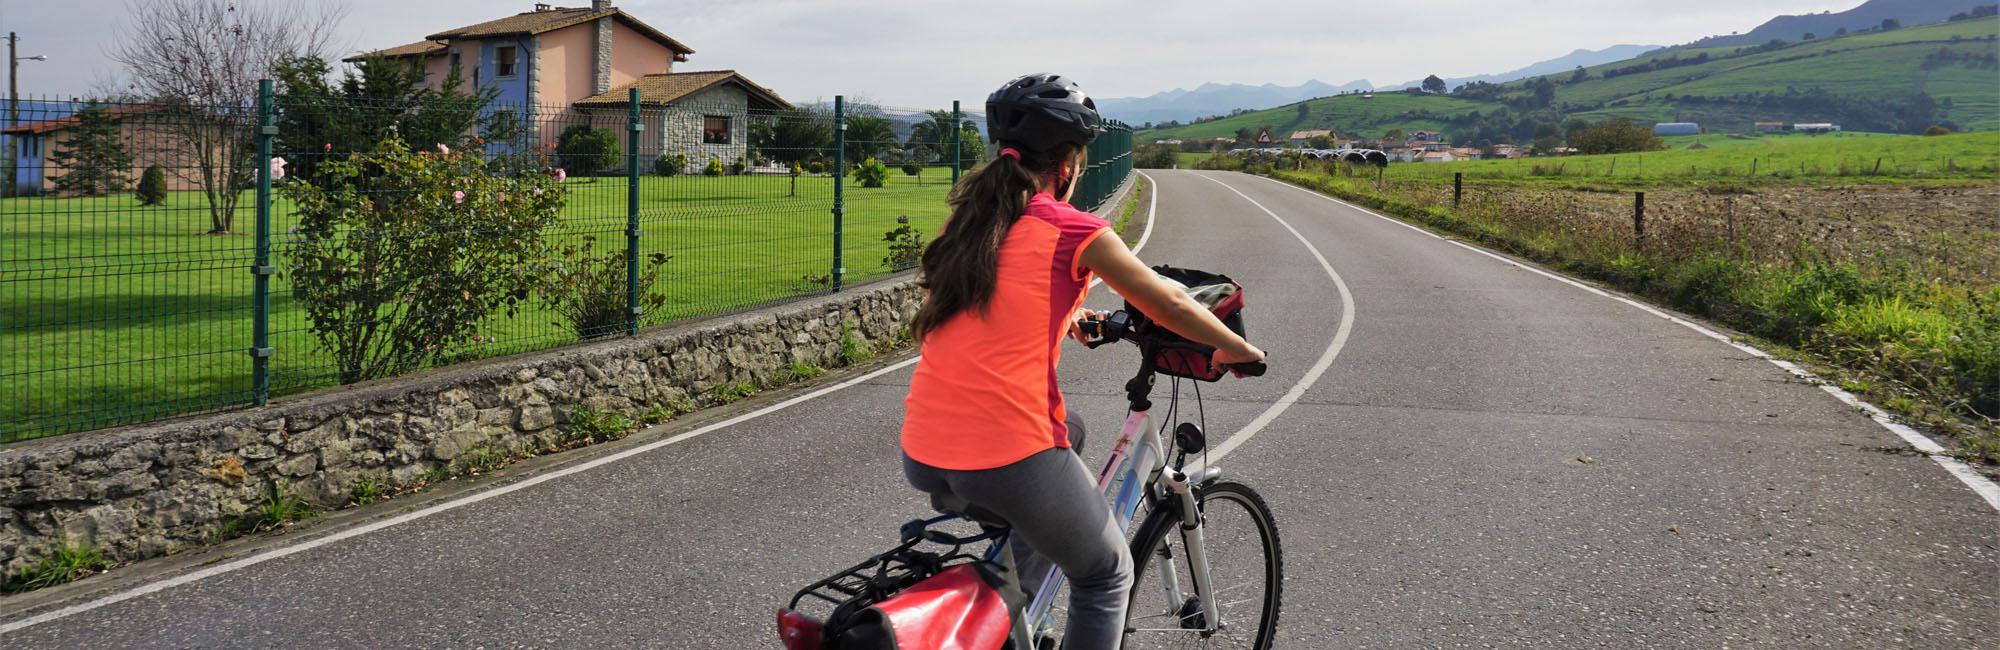 Cyclist biking in an Asturian road